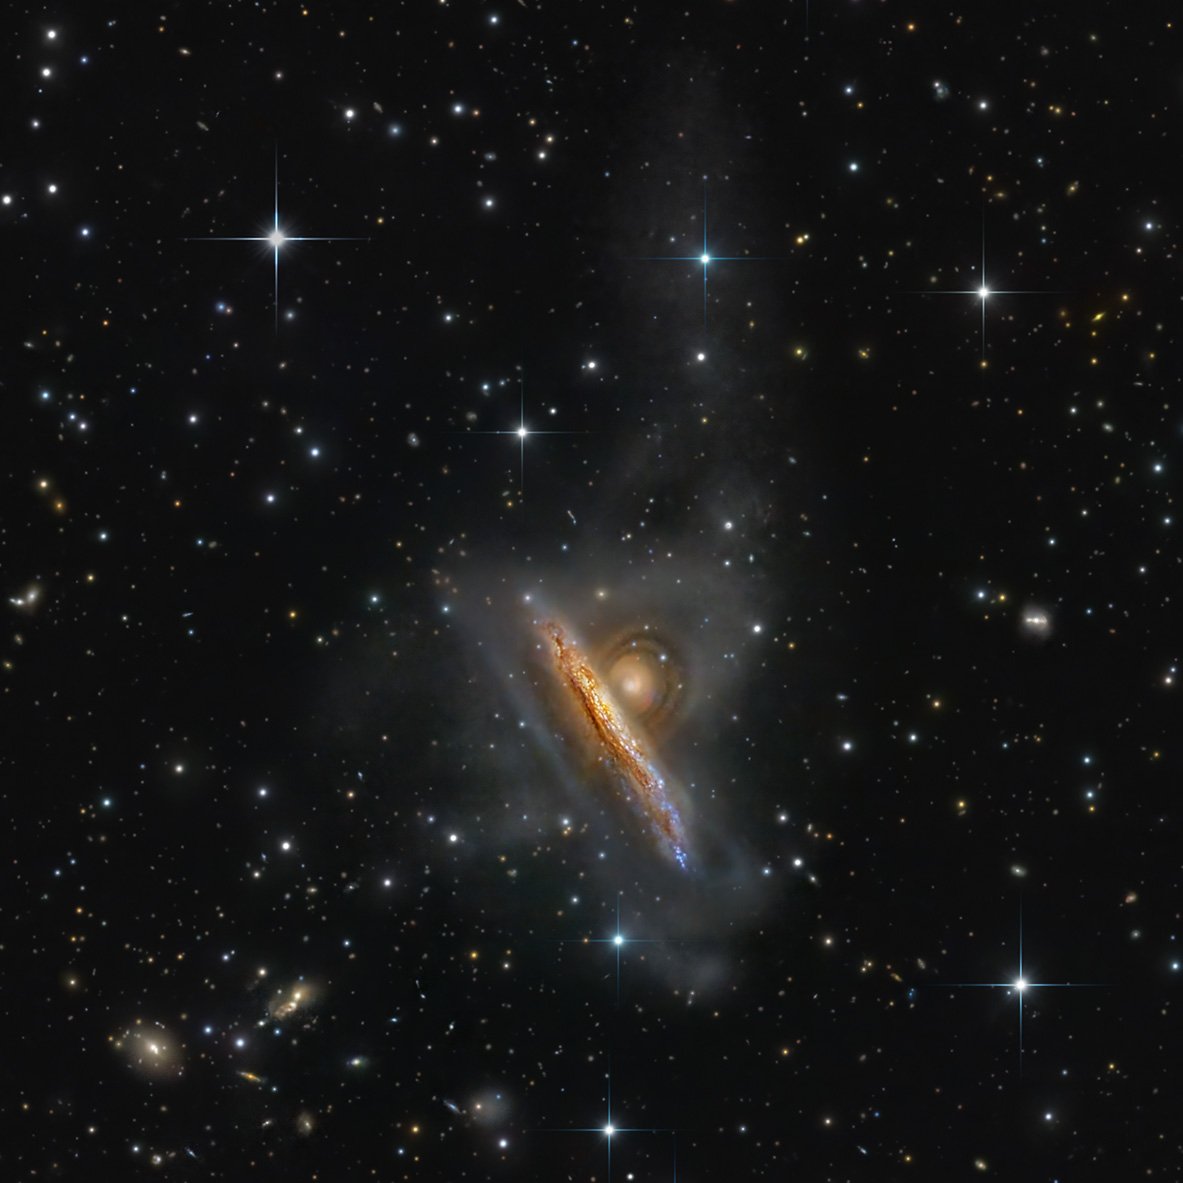 NGC 1888-1889